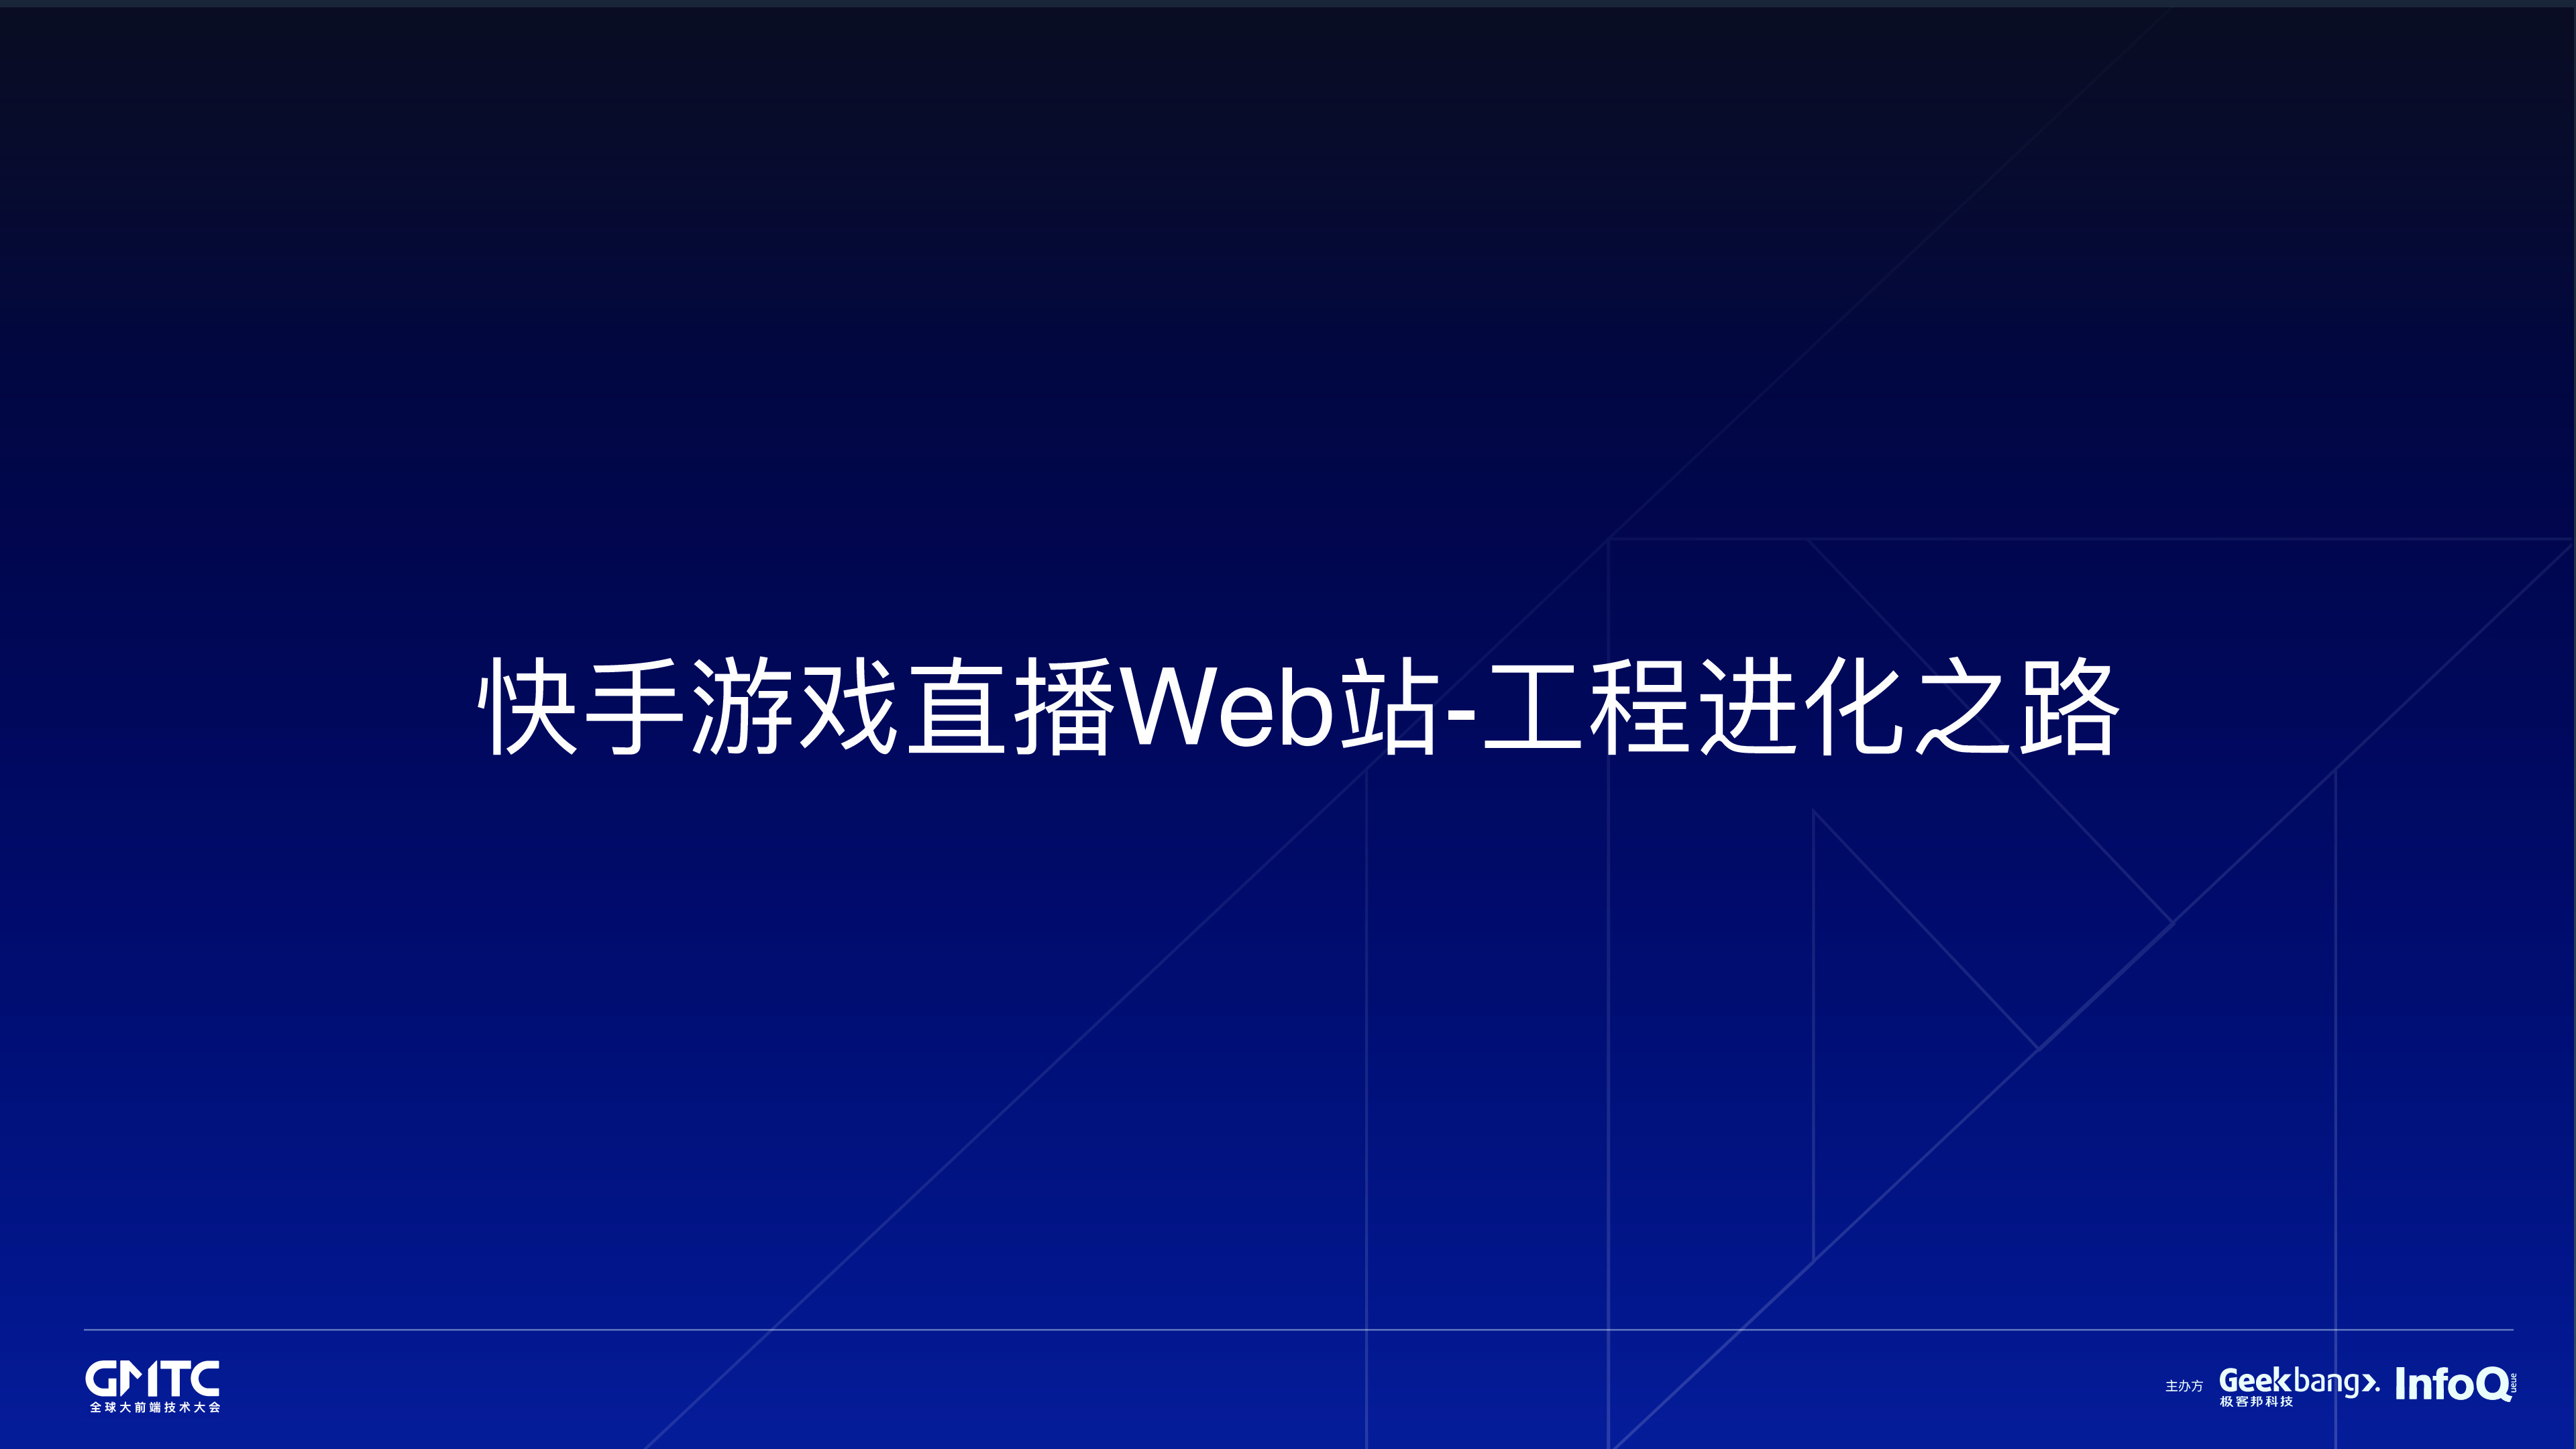 俞天翔-快手游戏直播Web站-工程进化之路